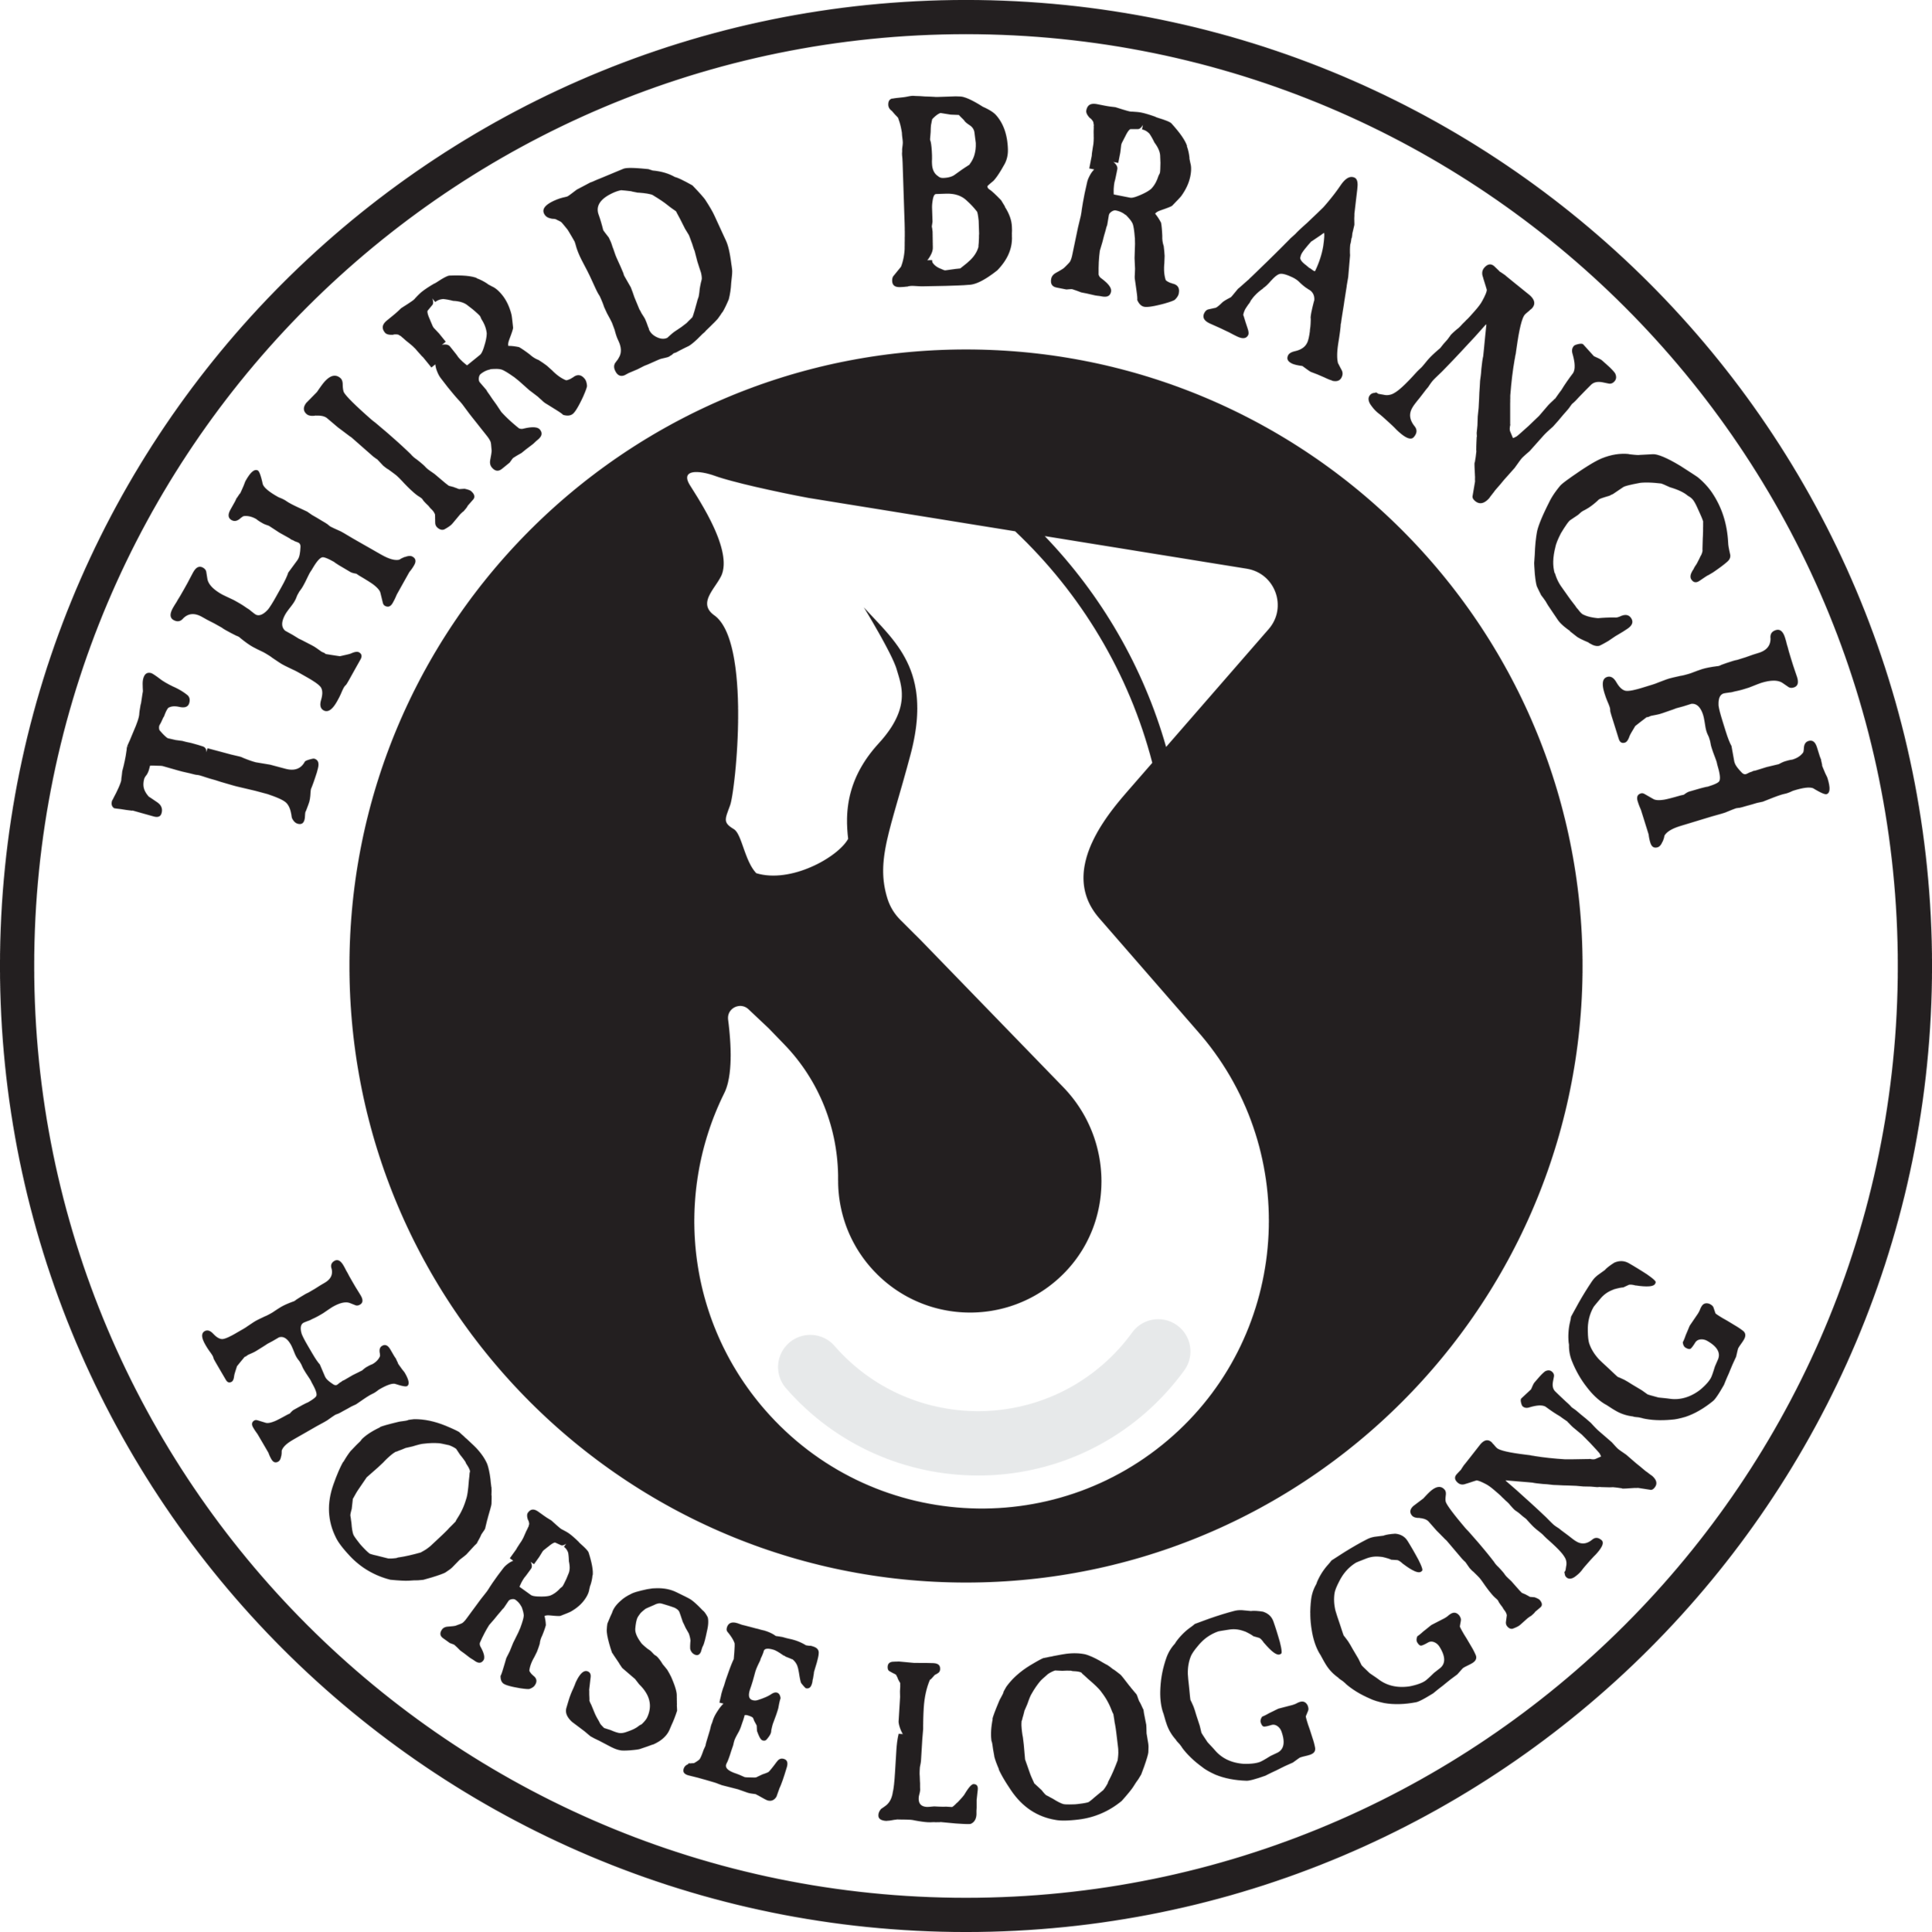 Third Branch Horse Logging